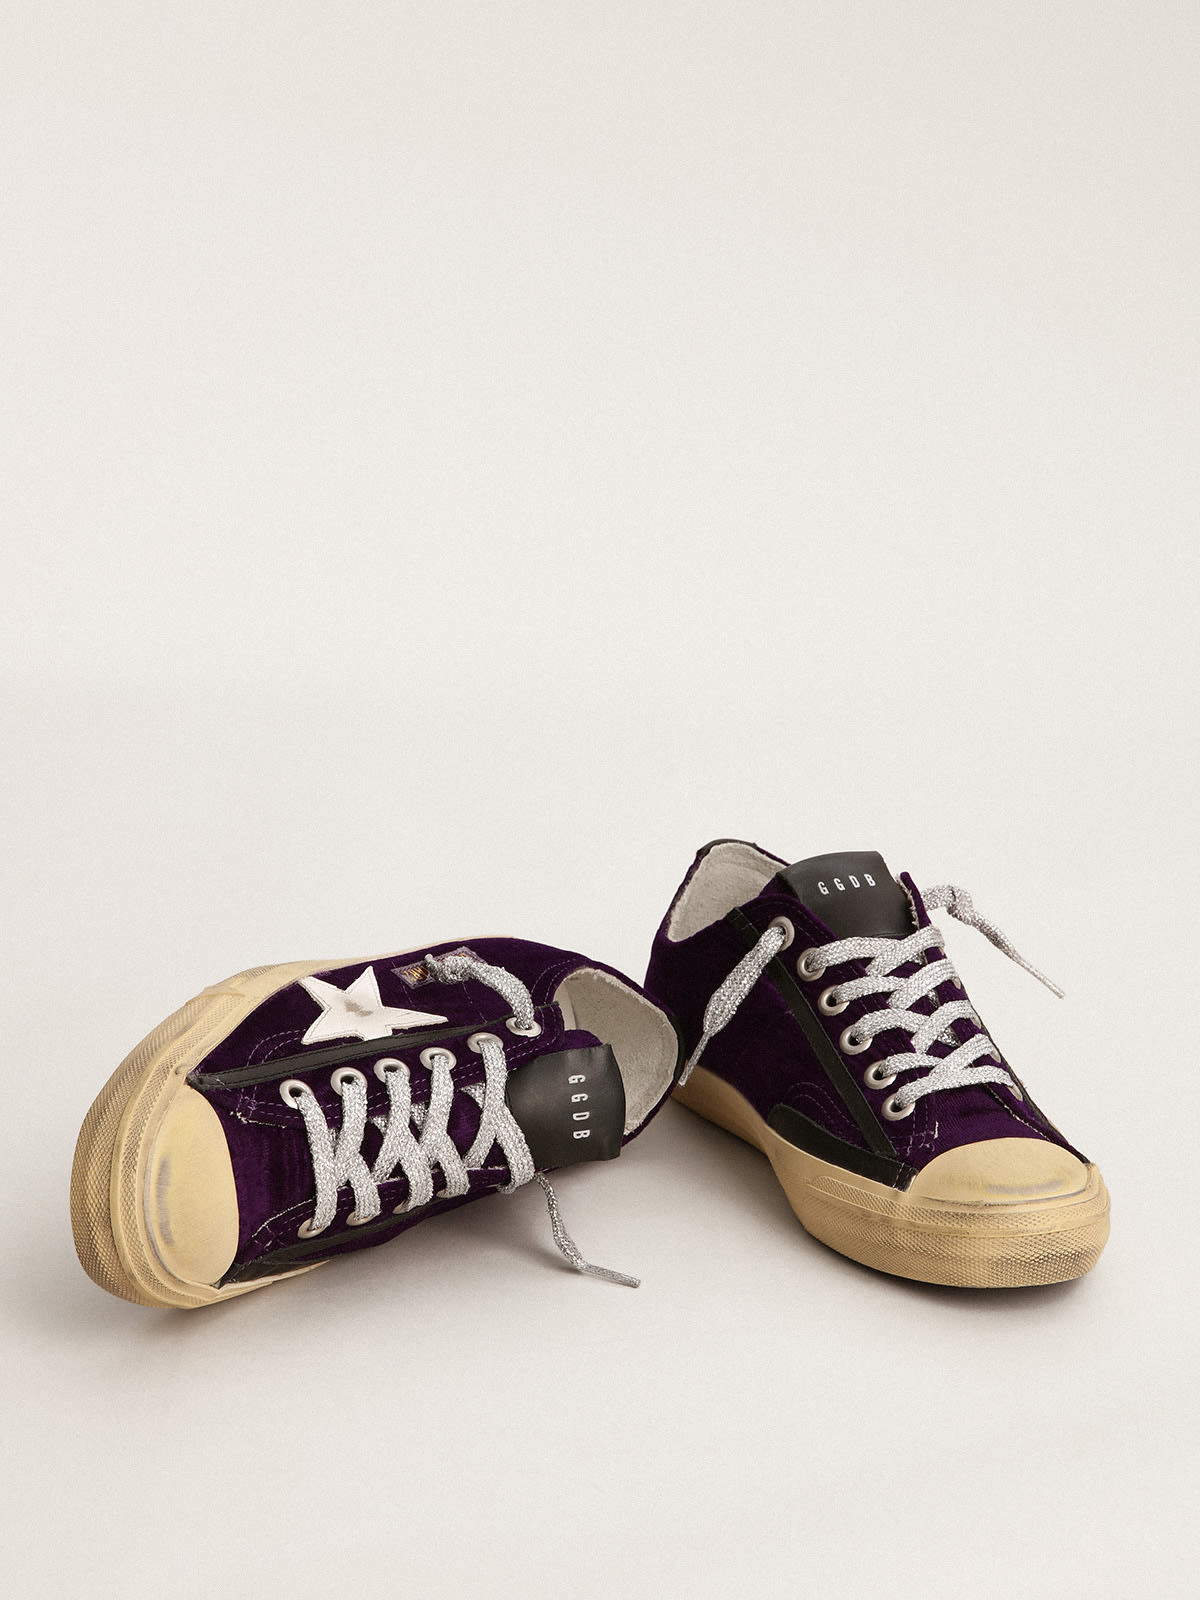 Golden Goose - Zapatillas deportivas V-Star LTD de terciopelo violeta con estrella de piel blanca in 